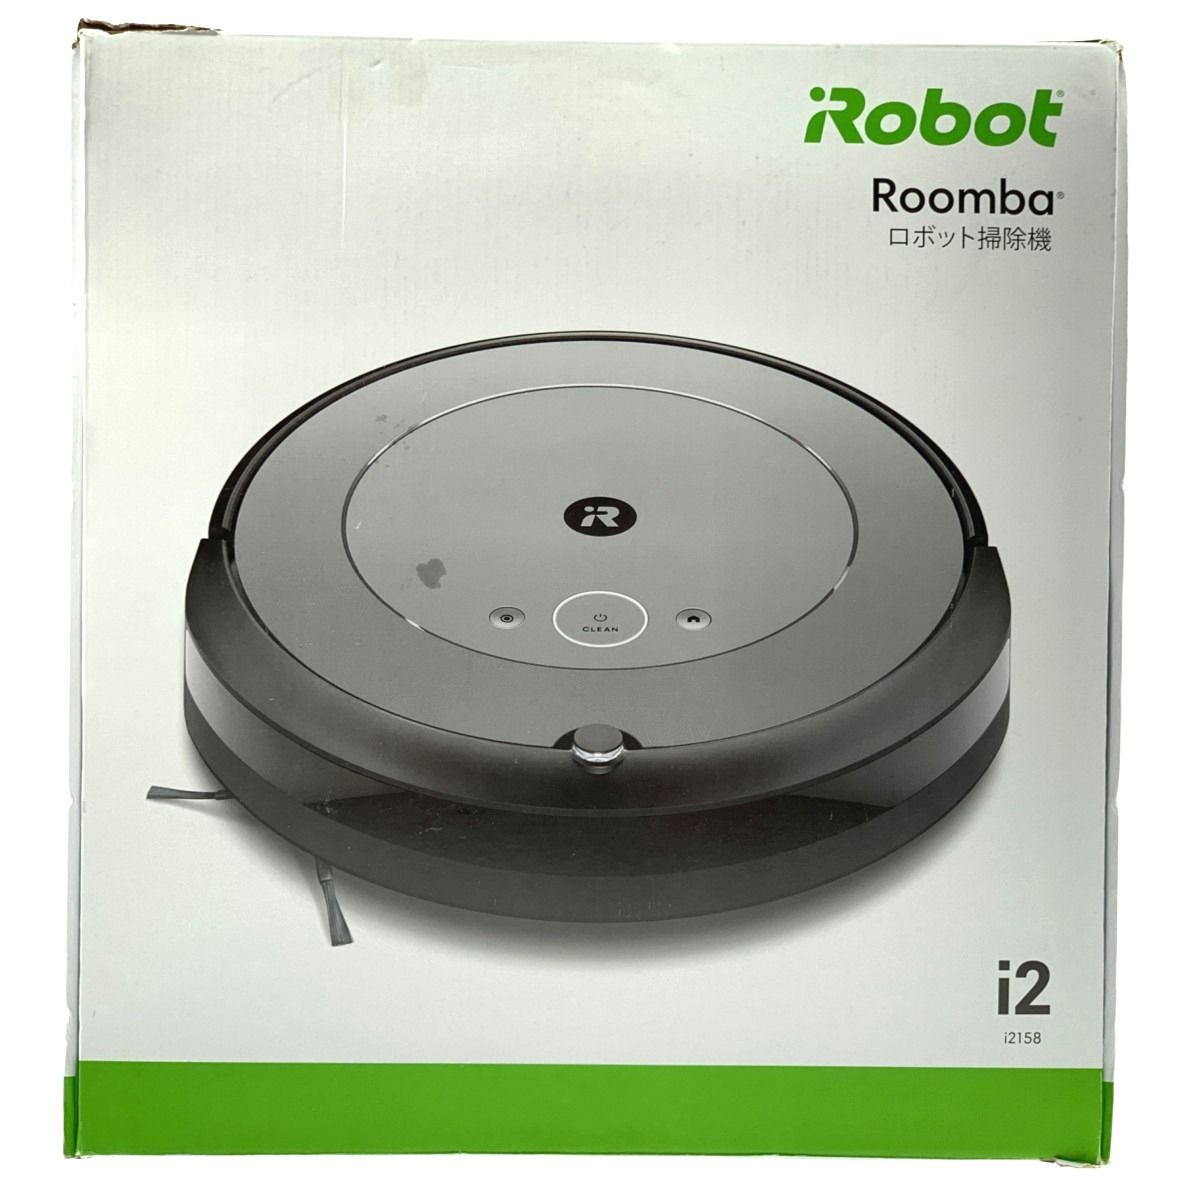 ▽▽iRobot Roomba ルンバ i2 i2158 ロボット掃除機 RVD-Y1 - なんでも